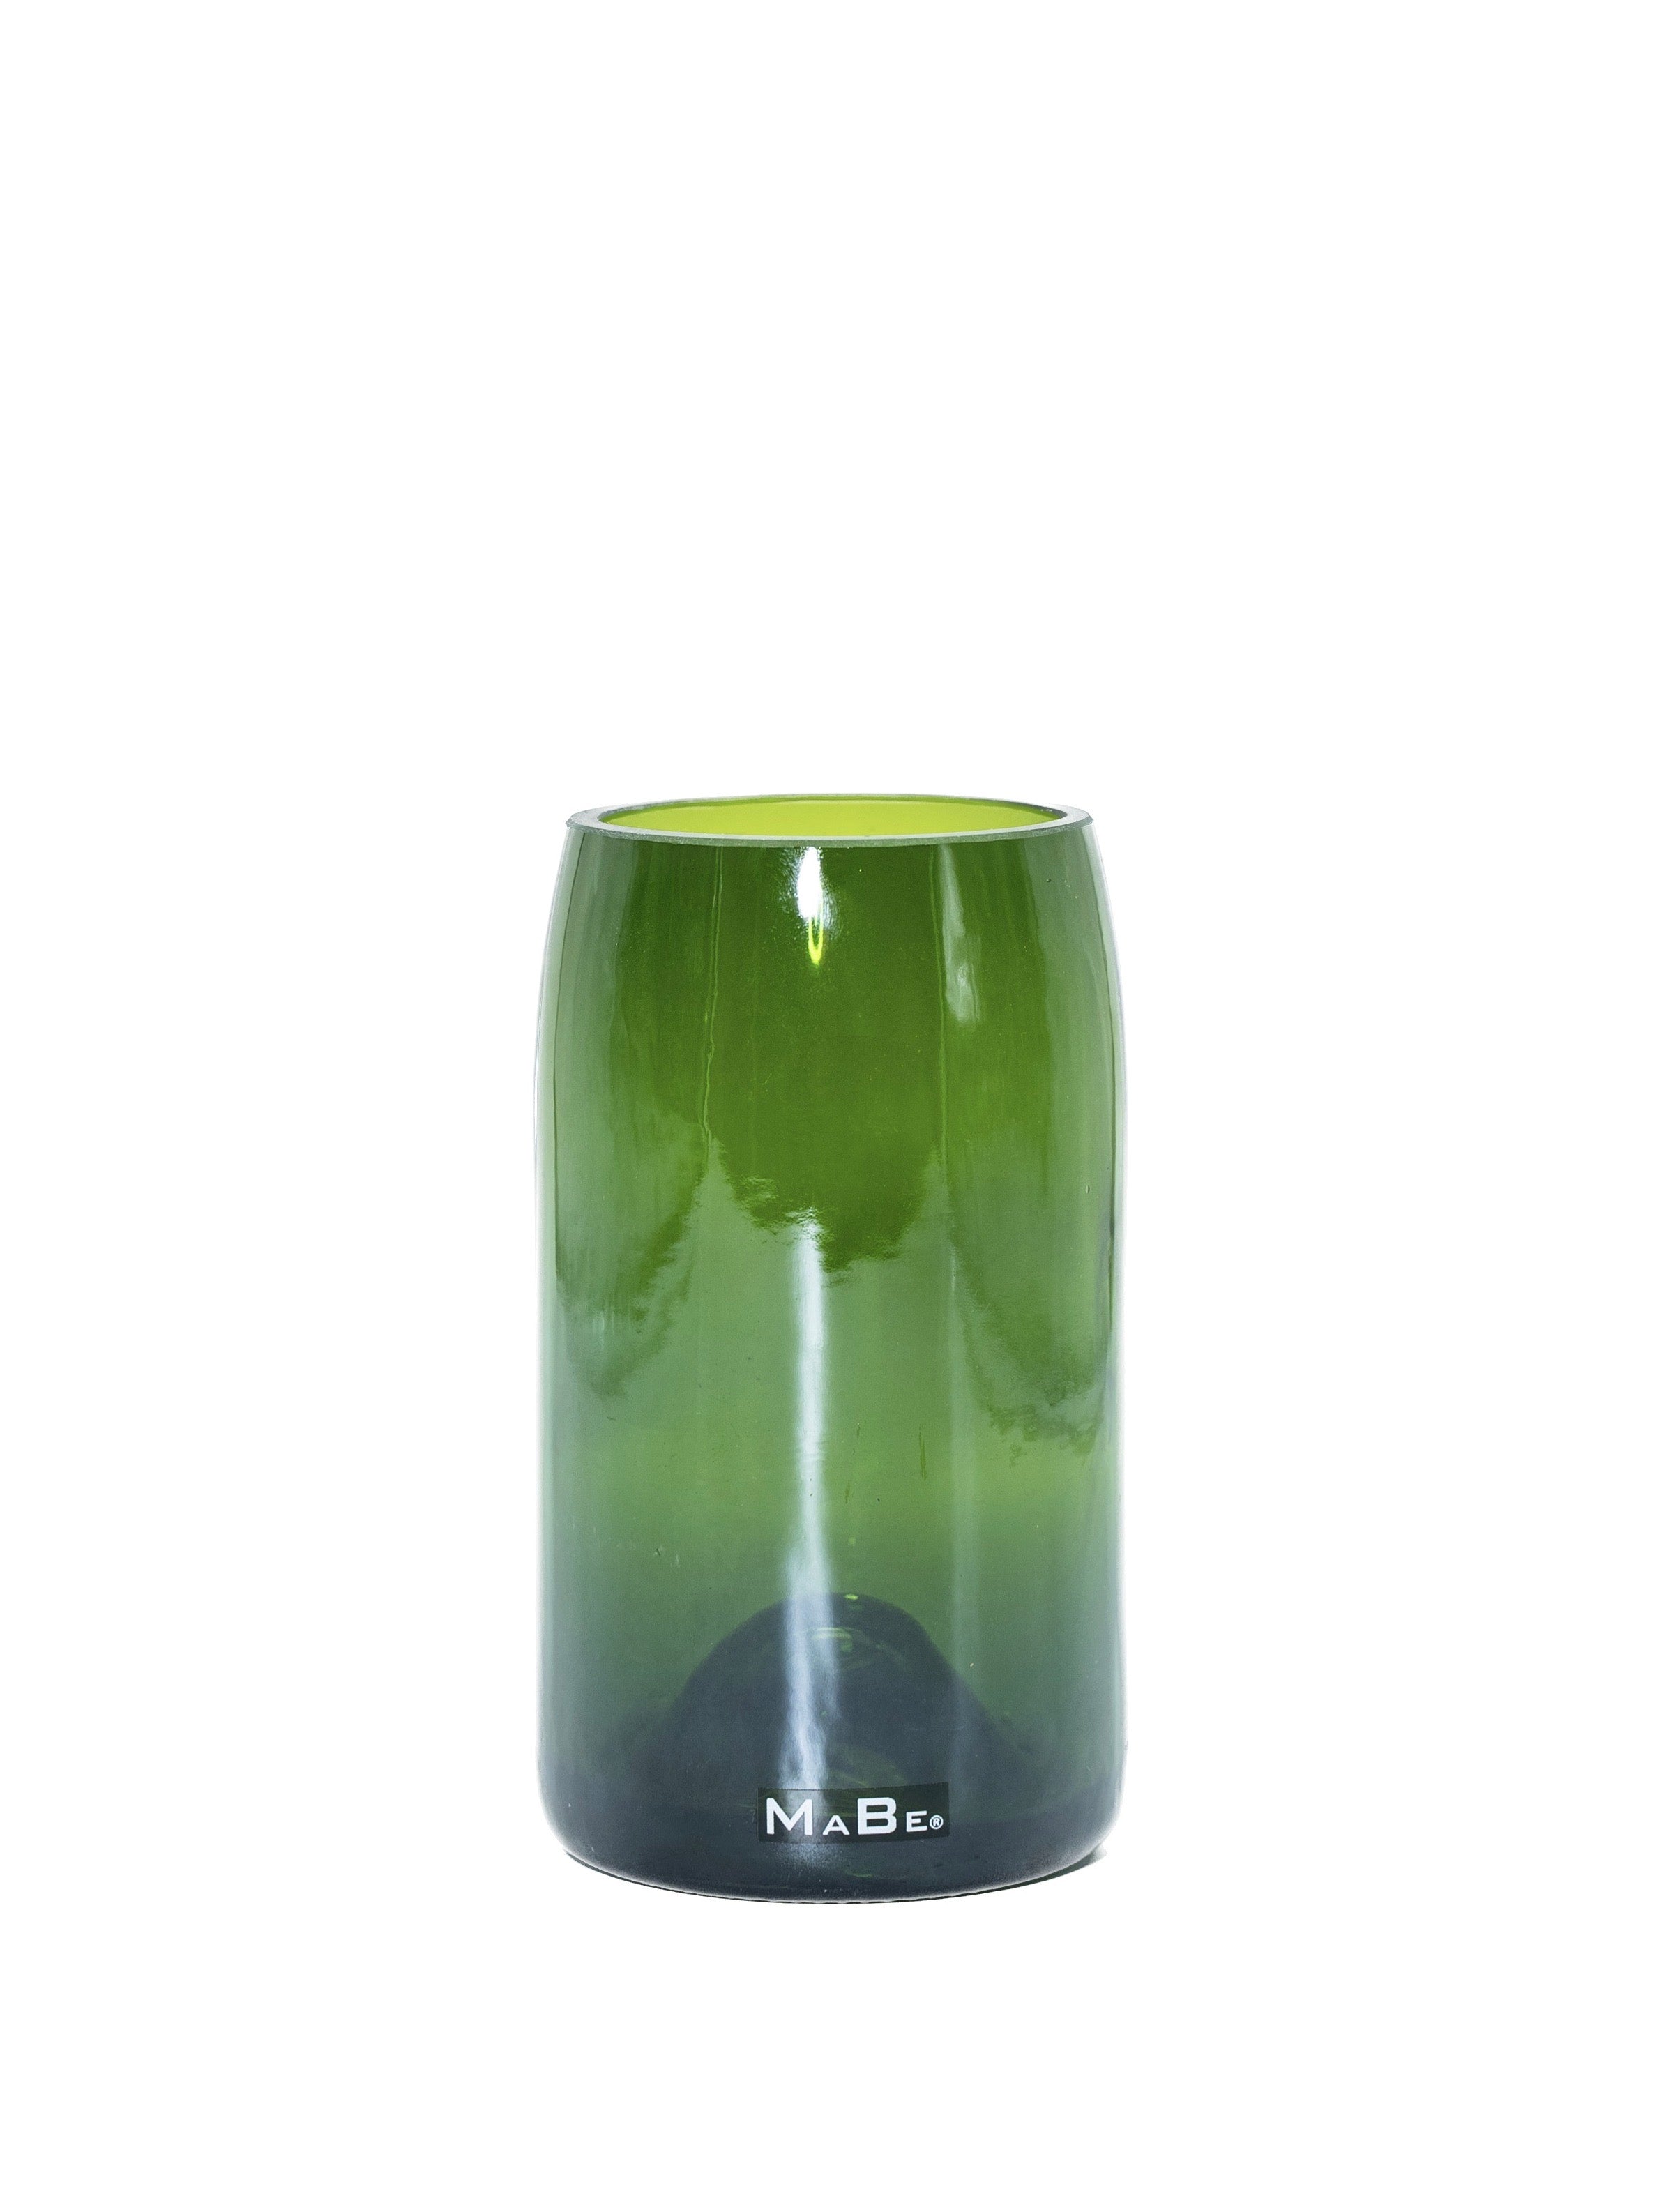 Vase aus der Champagner Flasche in grün